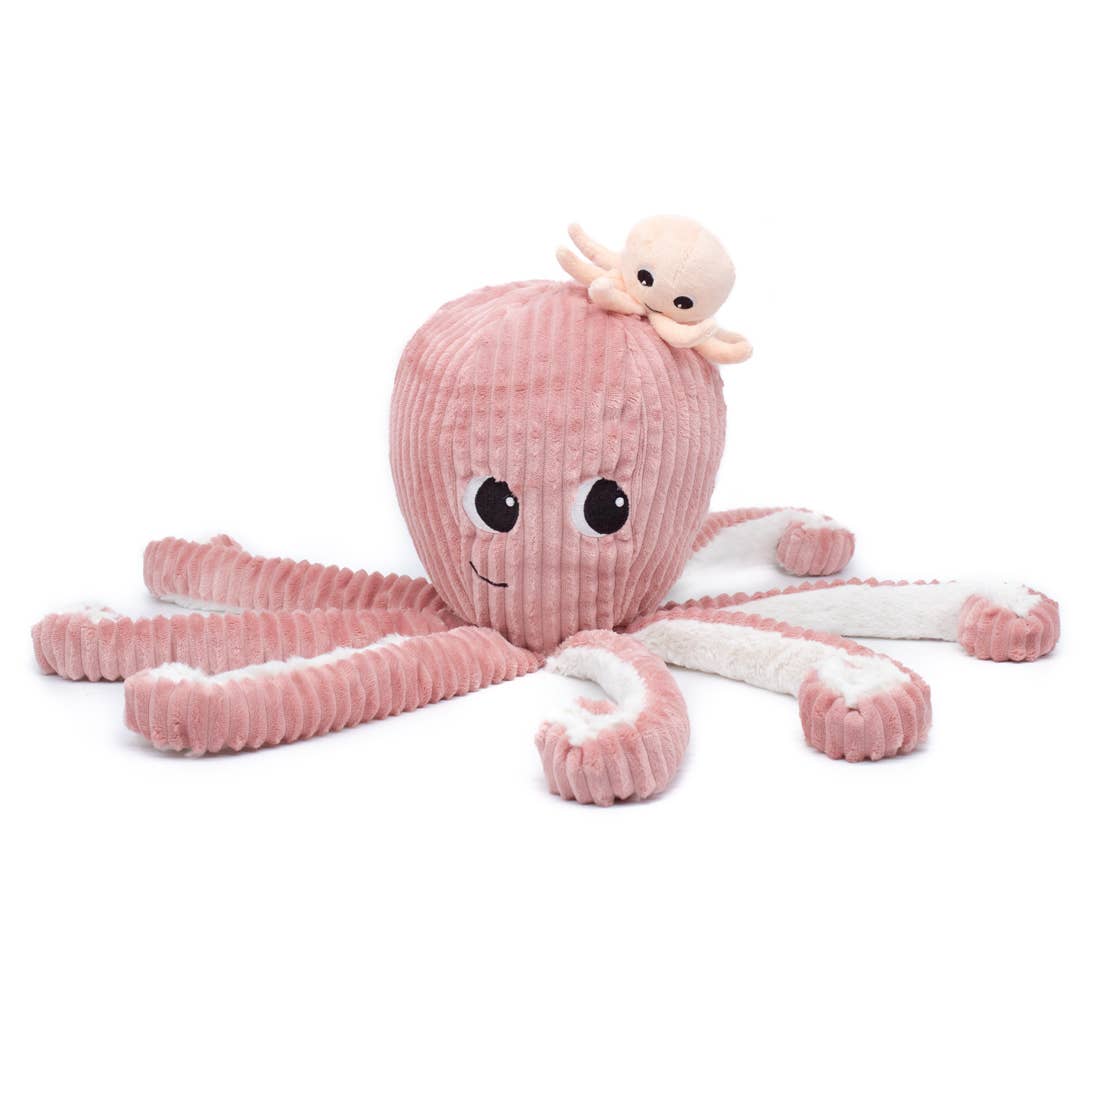 Scraptopus, Plush Toy Octopus